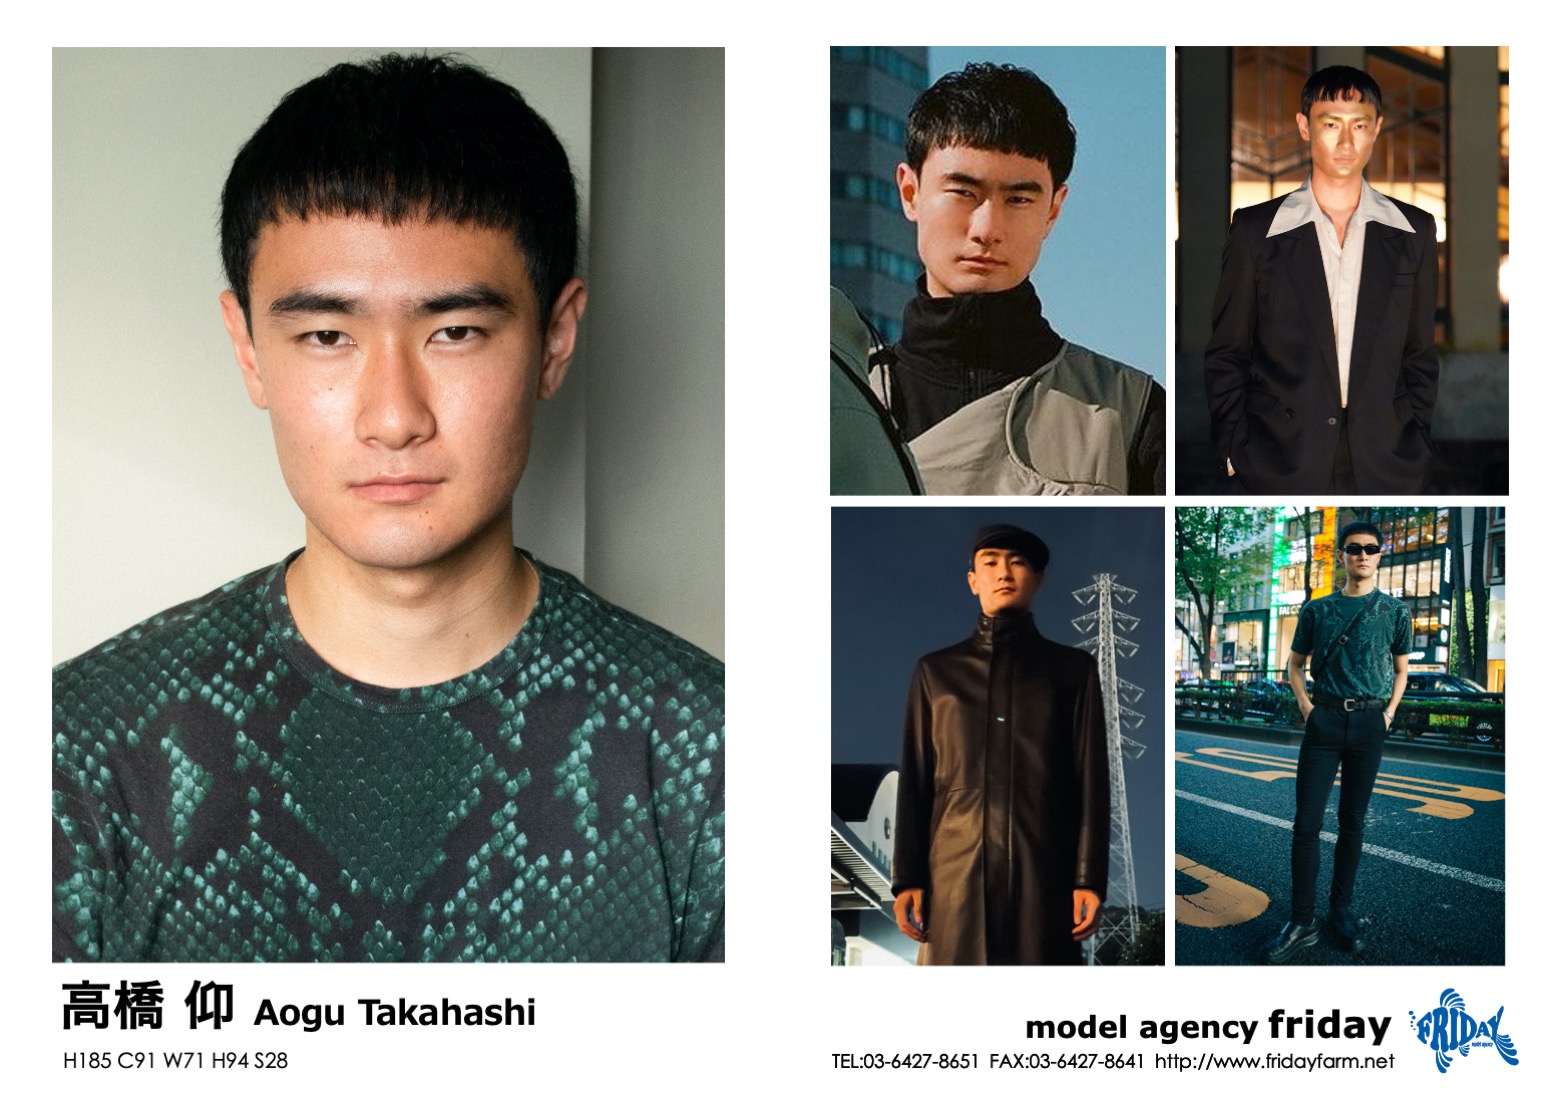 高橋 仰 - Aogu Takahashi | model agency friday